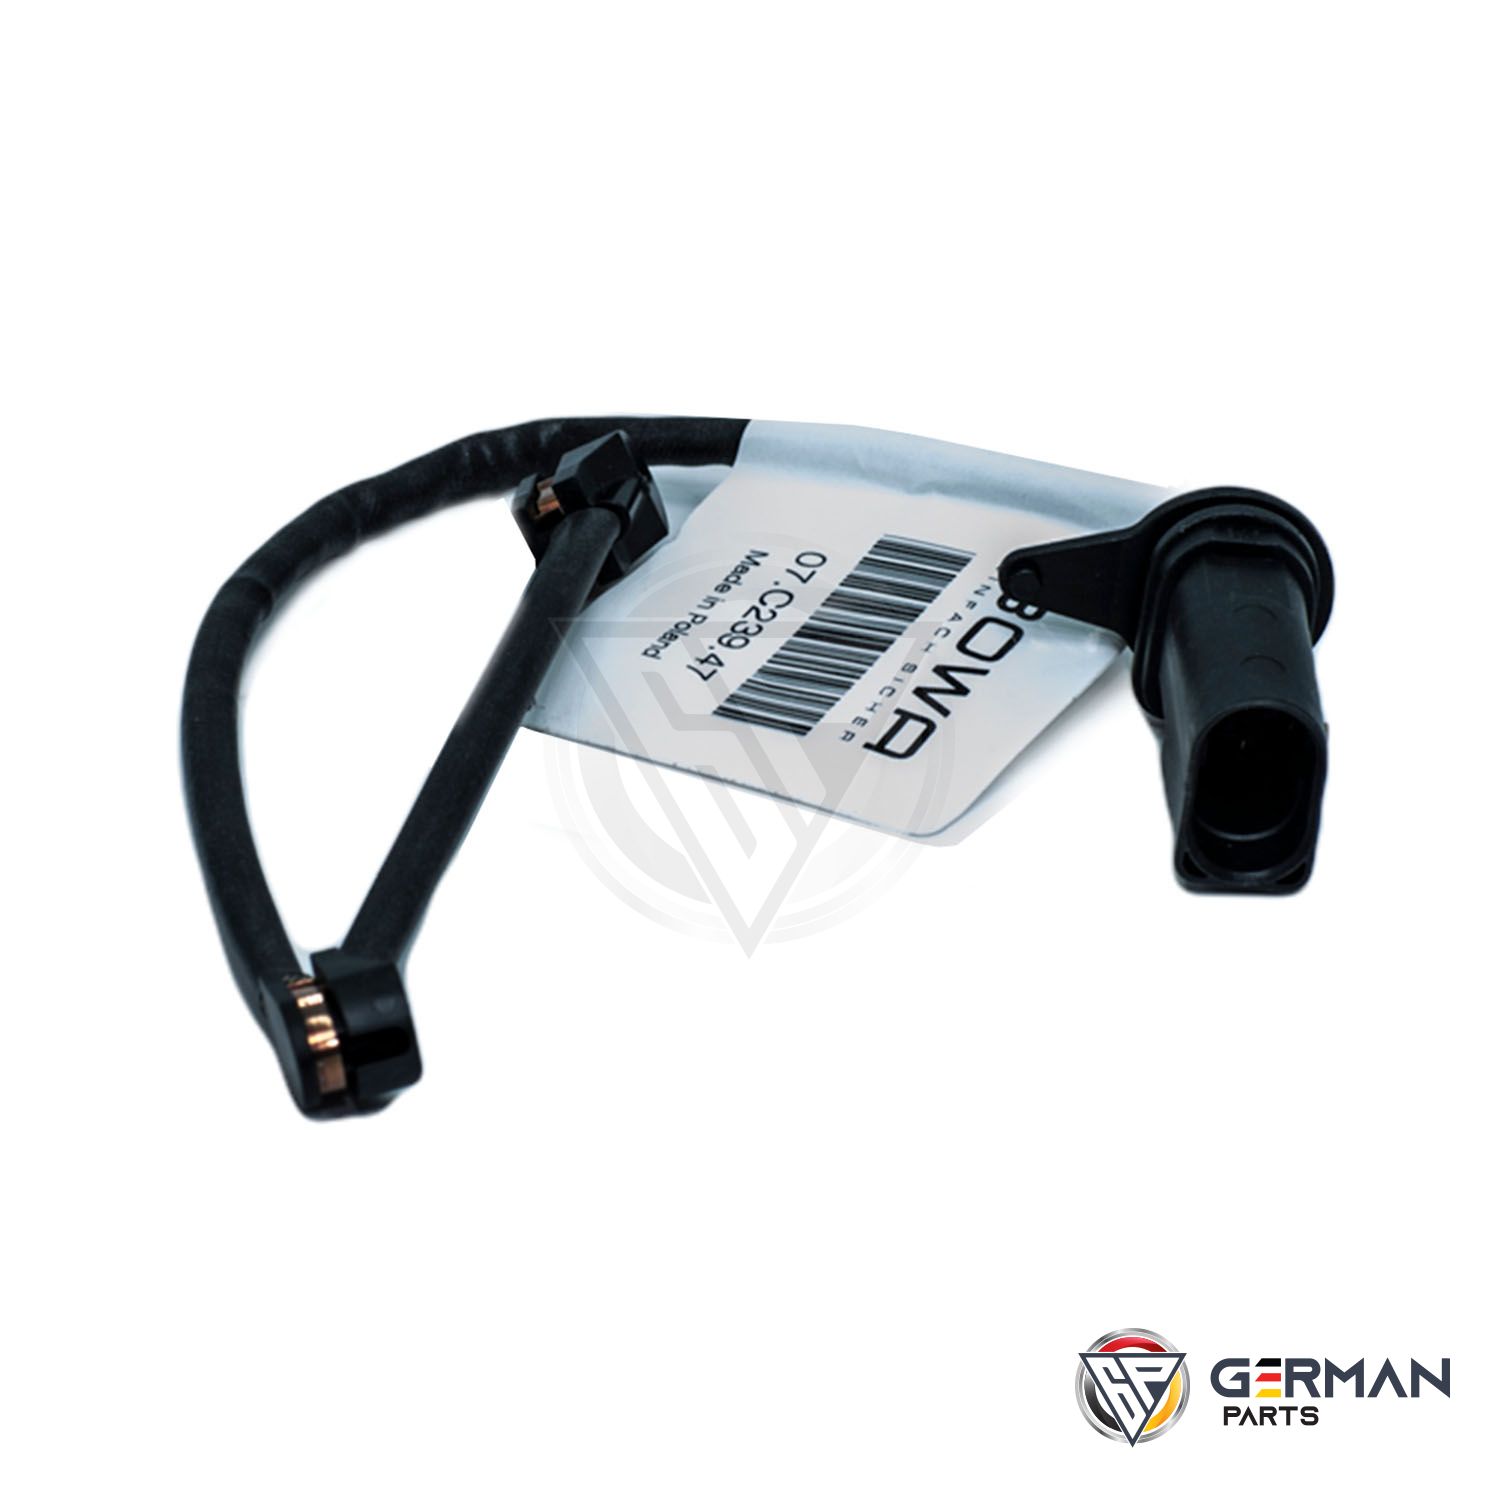 Buy Audi Volkswagen Brake Sensor 4G0615121C - German Parts